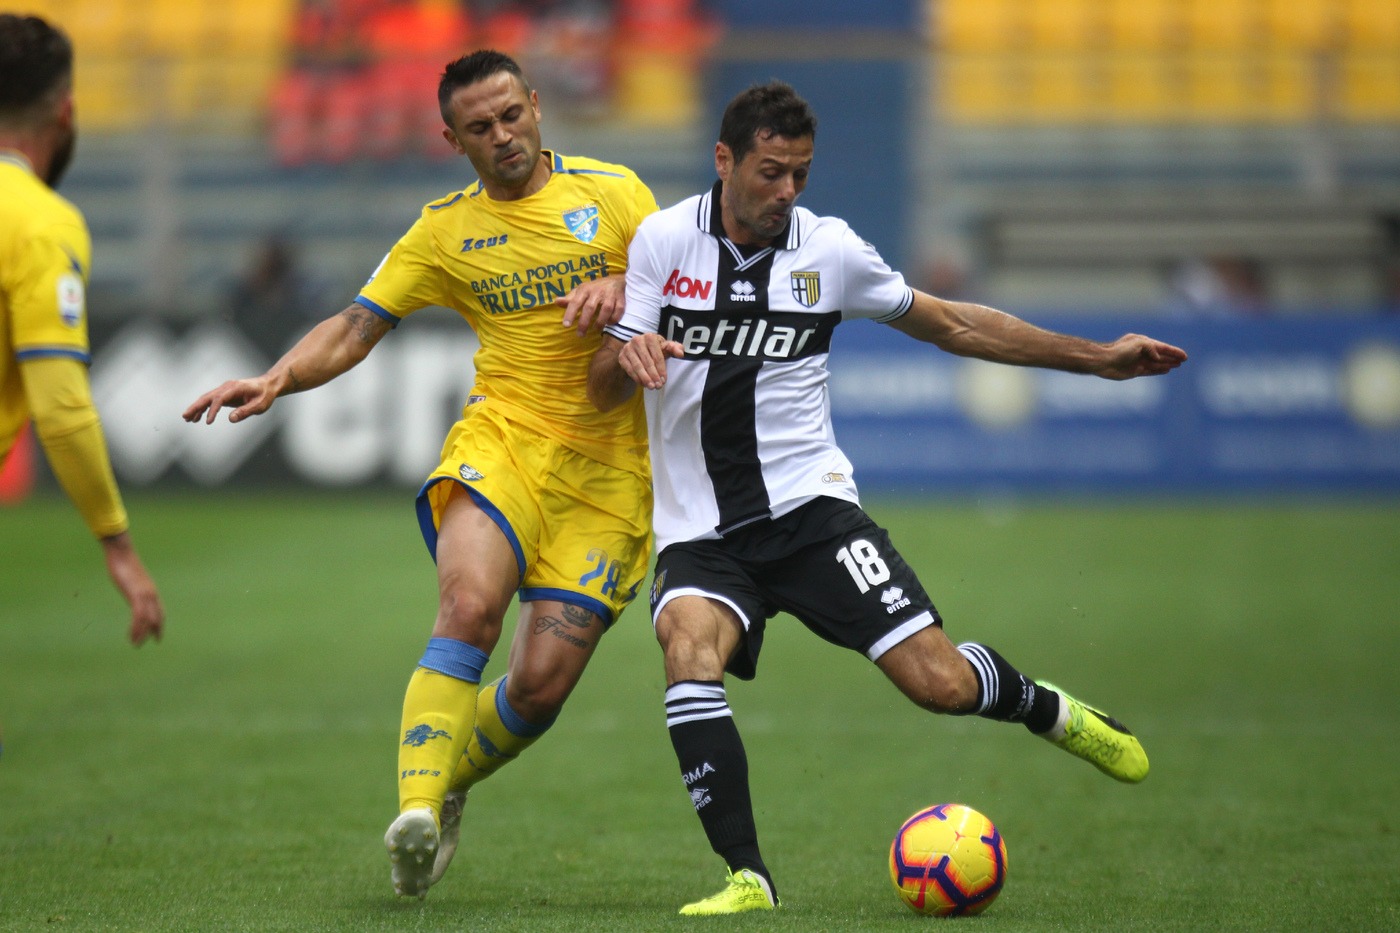 Frosinone-Cagliari 2 dicembre: si gioca per la 14 esima giornata del campionato di Serie A. Entrambe vogliono tornare a vincere.